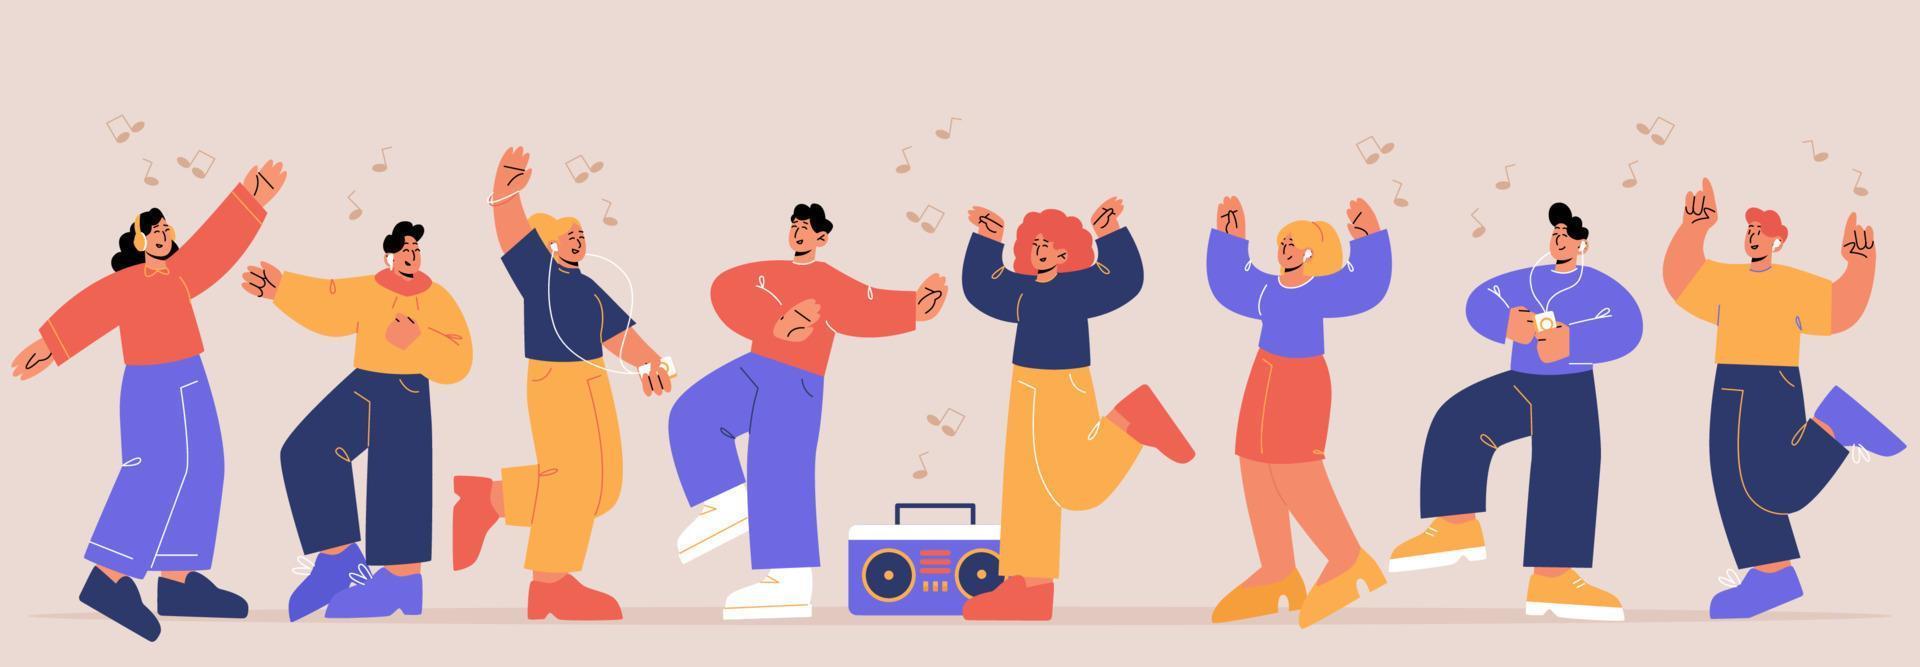 amigos felices bailan al ritmo de la música en la fiesta vector